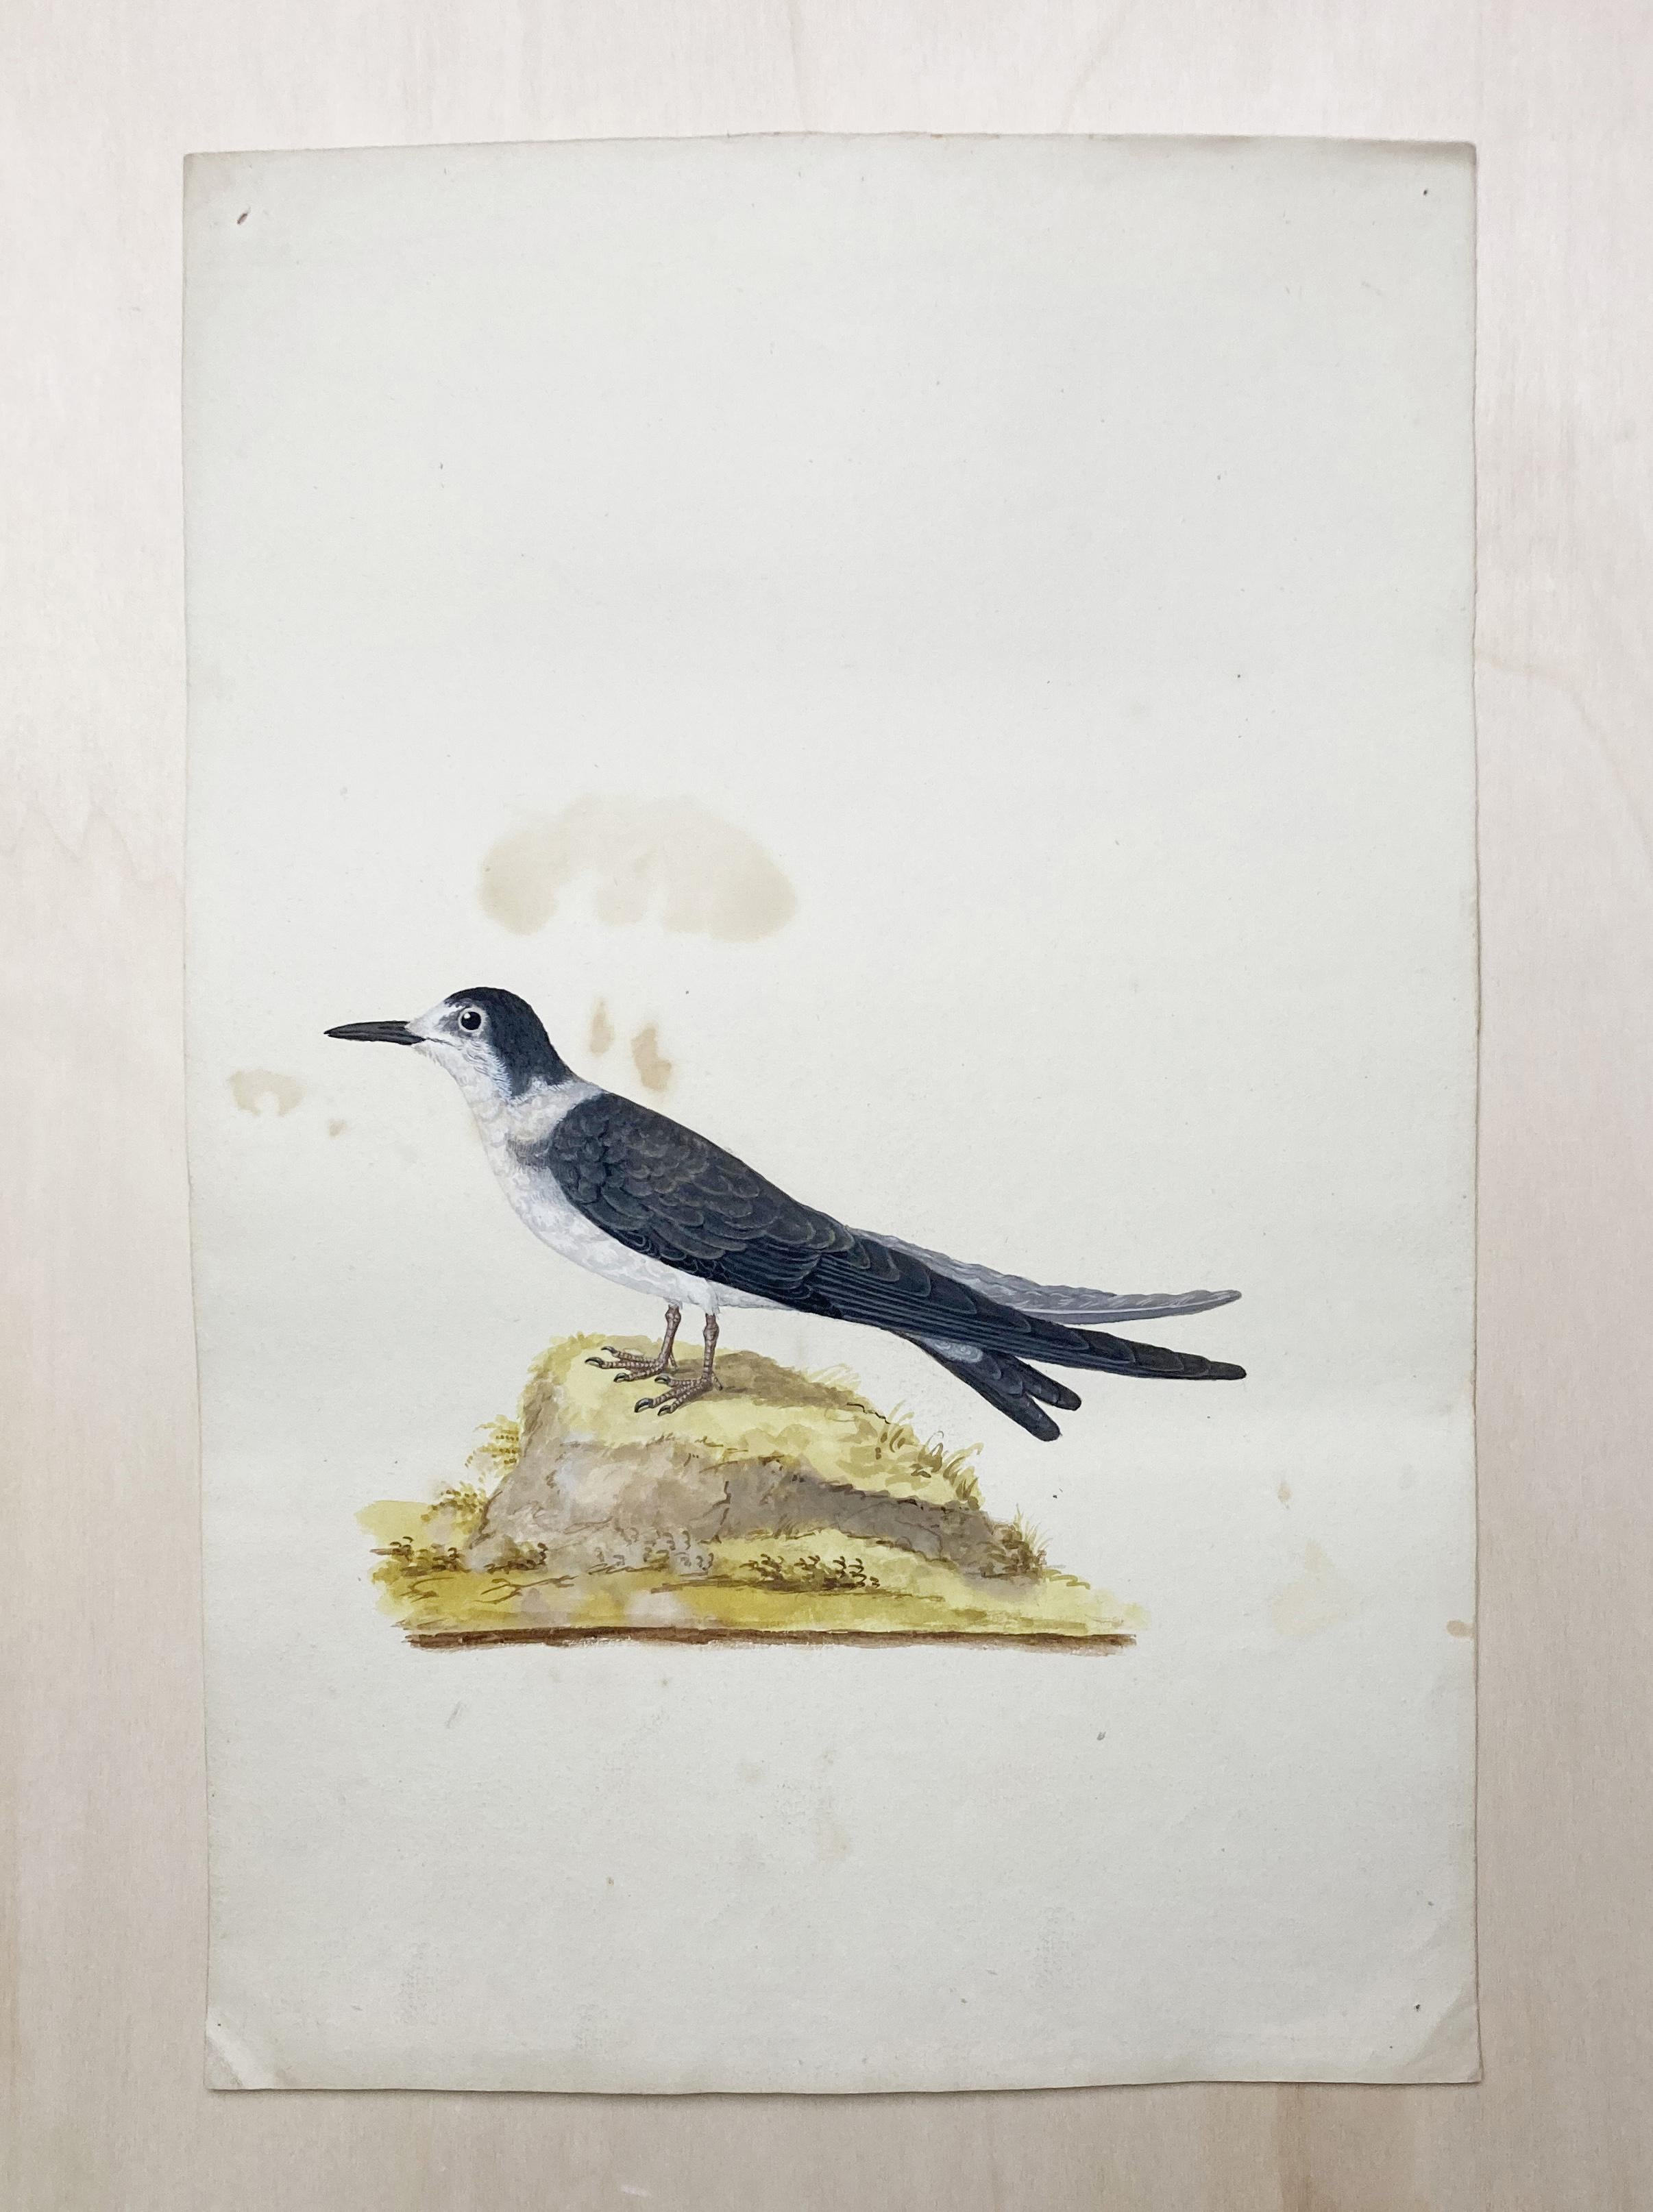 Animal Art Peter Paillou - Dessin d'oiseau en noir et blanc par un peintre britannique éclairé (Whiting)